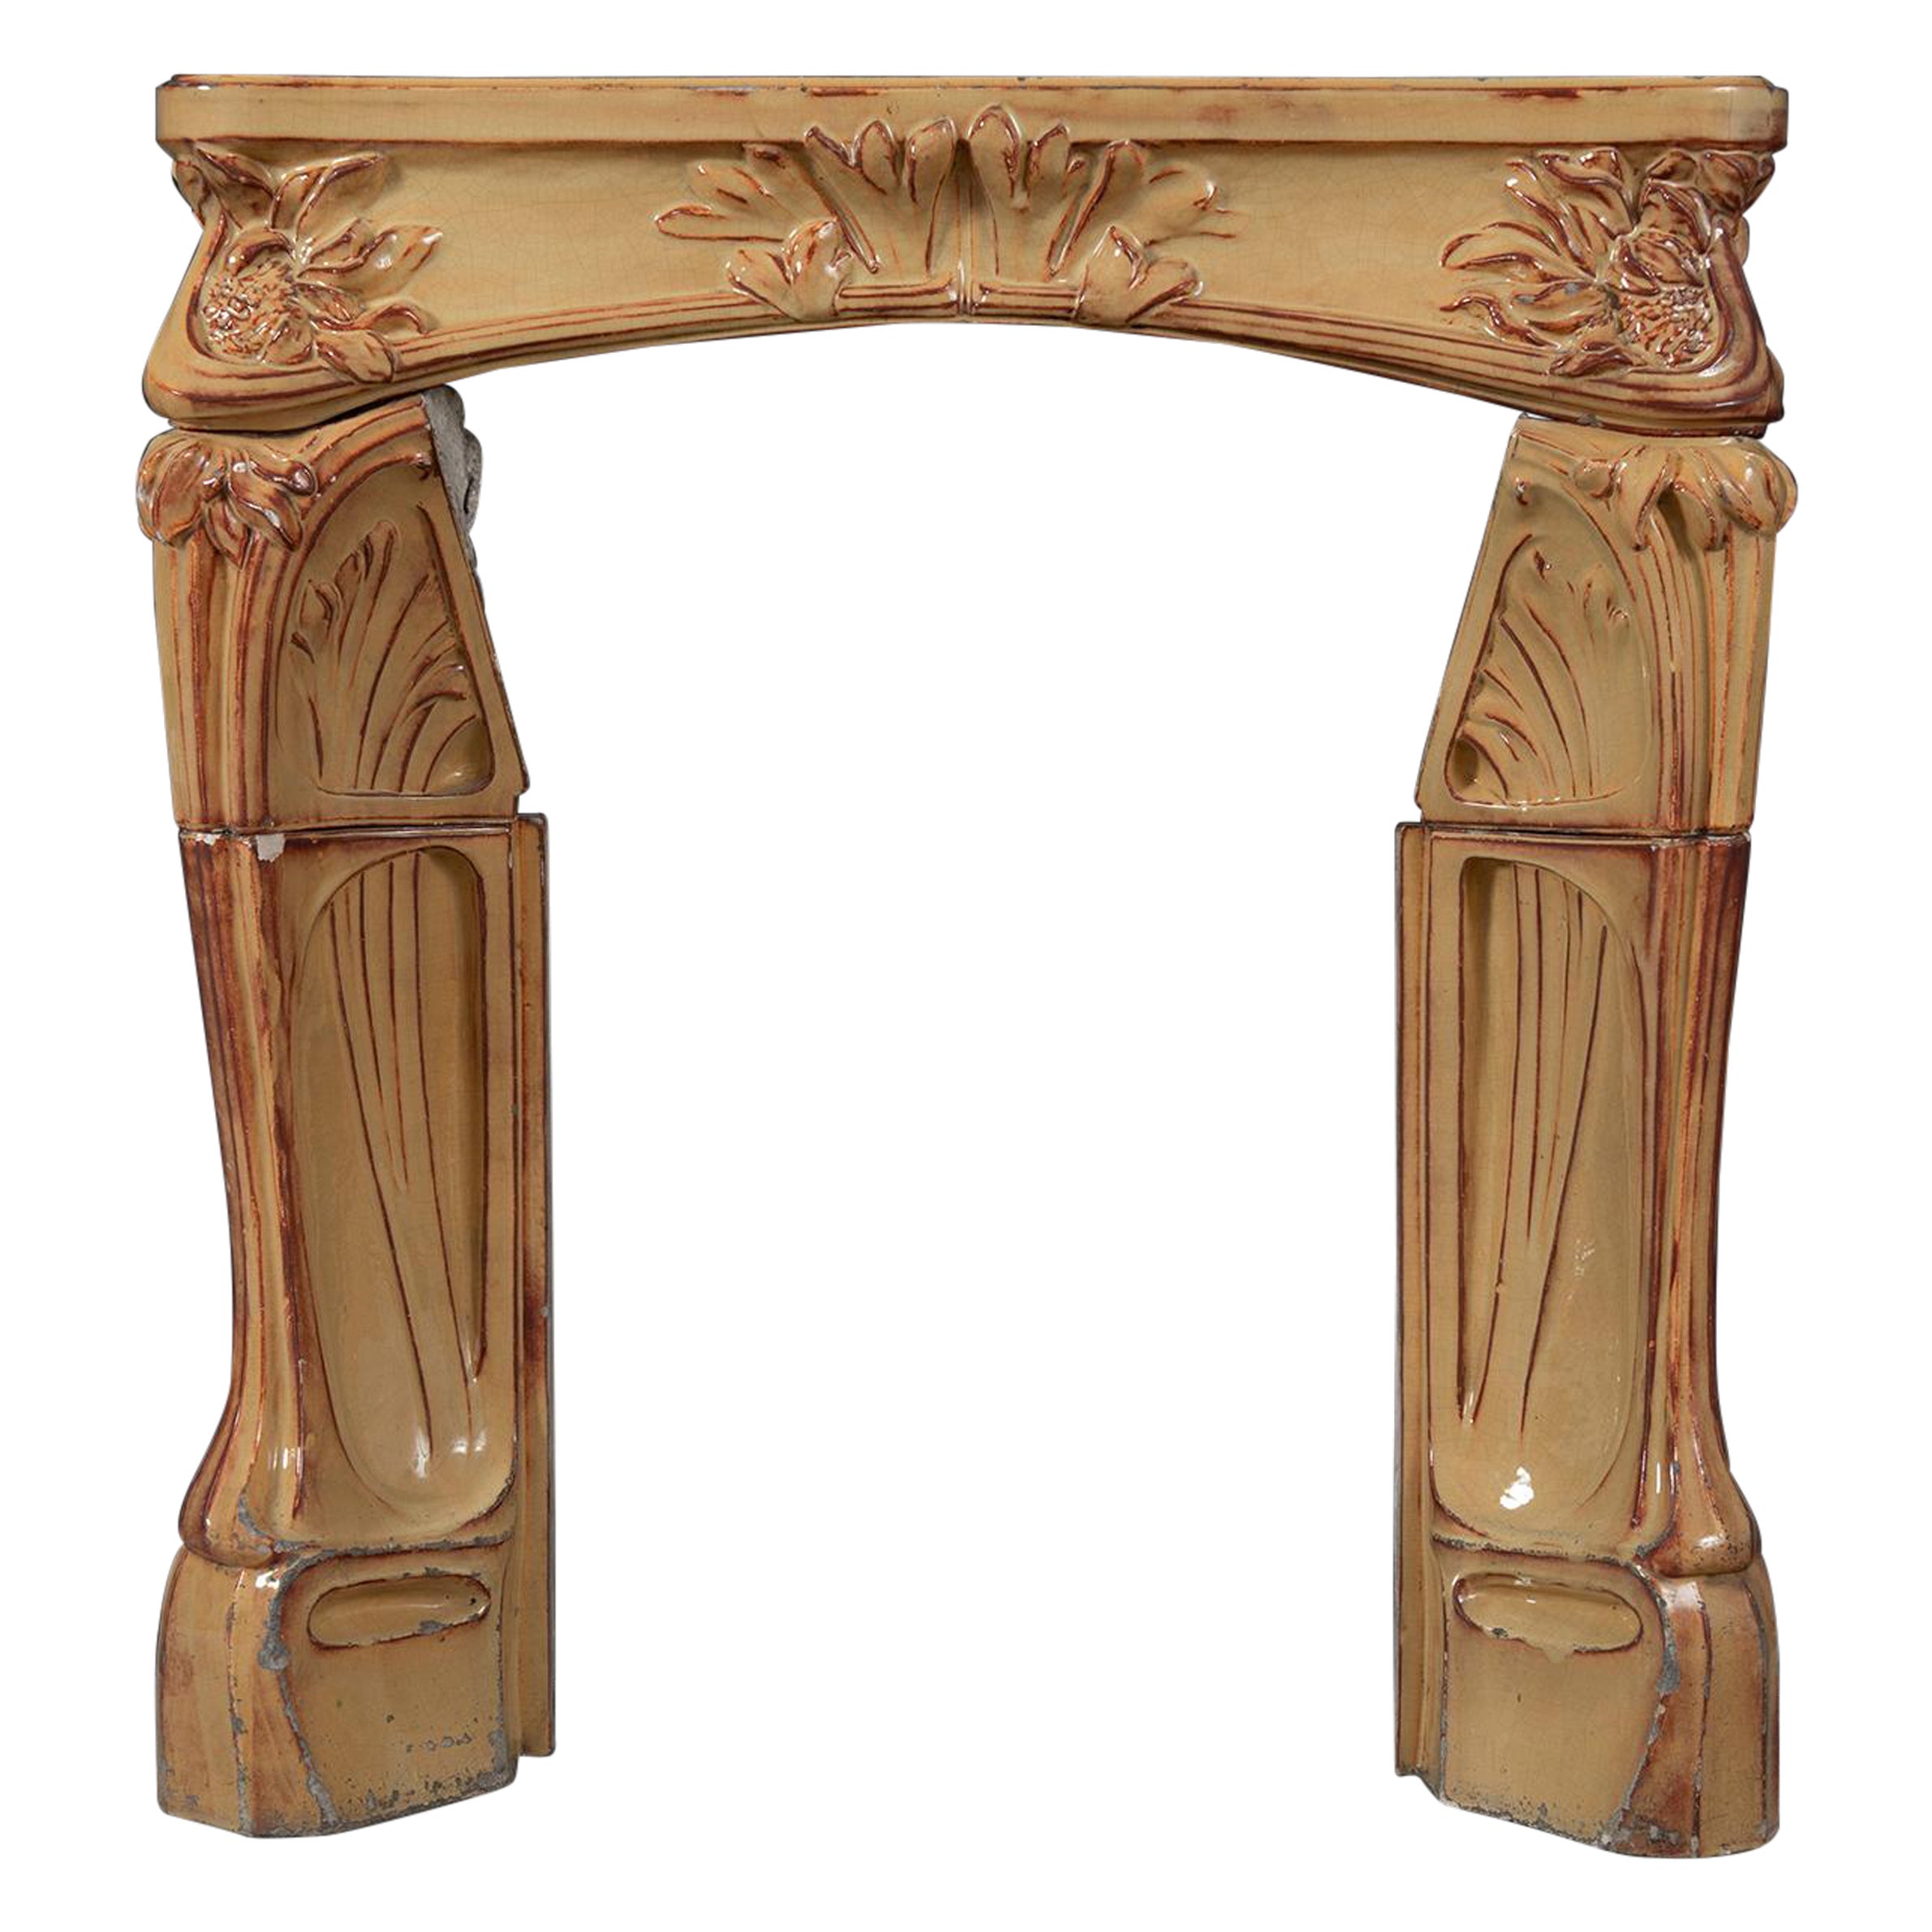 Antique Fireplace Mantel en Faience by Louis Majorelle For Sale